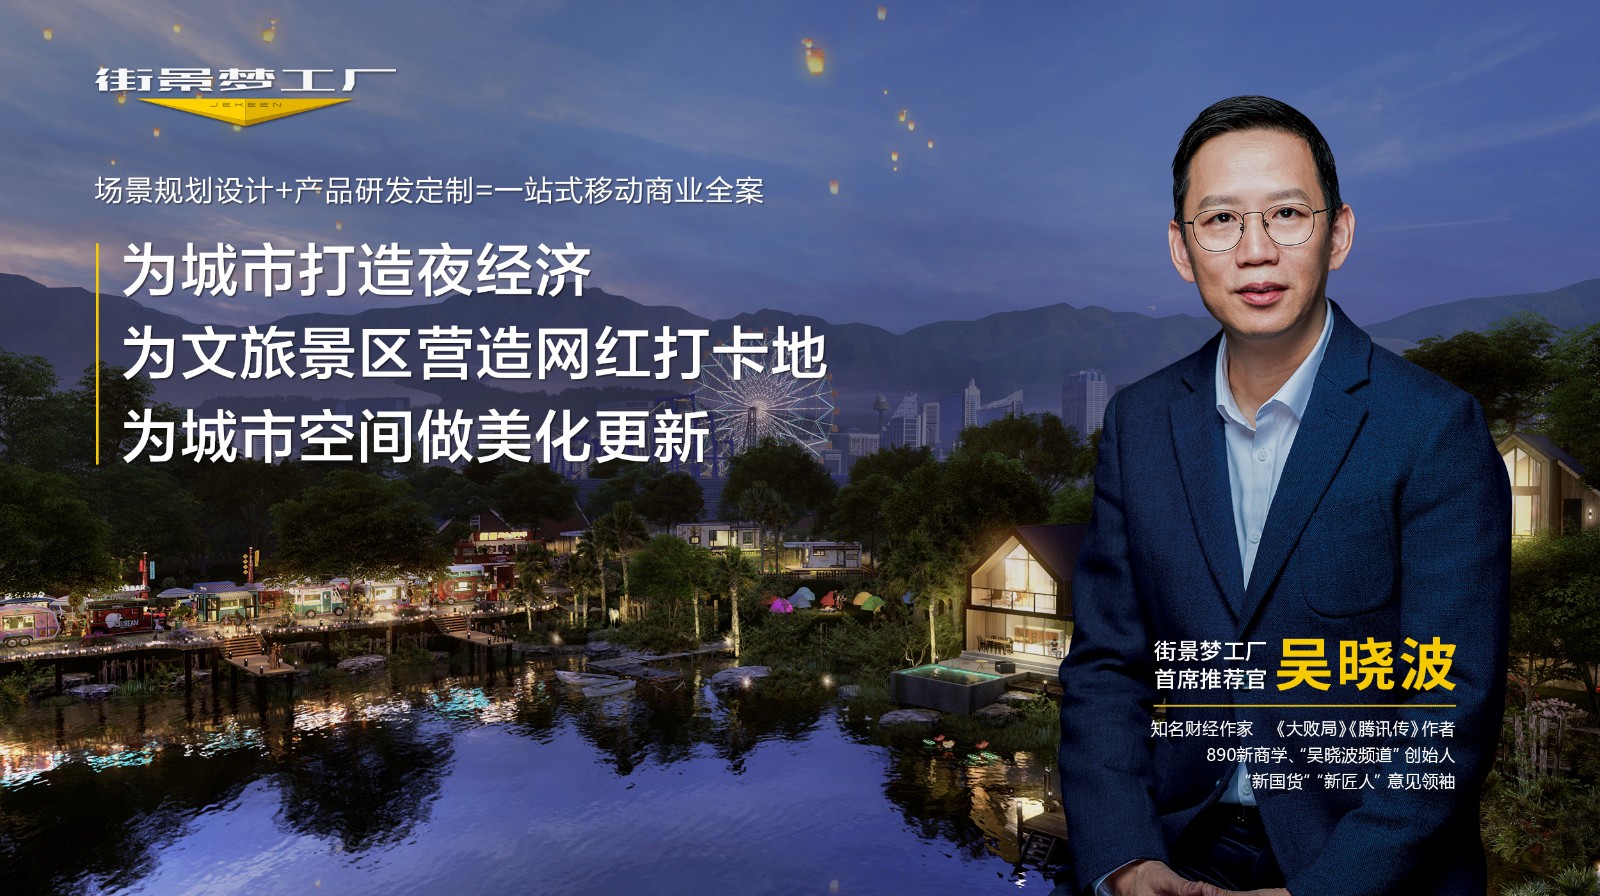 街景梦工厂将出席第五届中国文旅产业年会